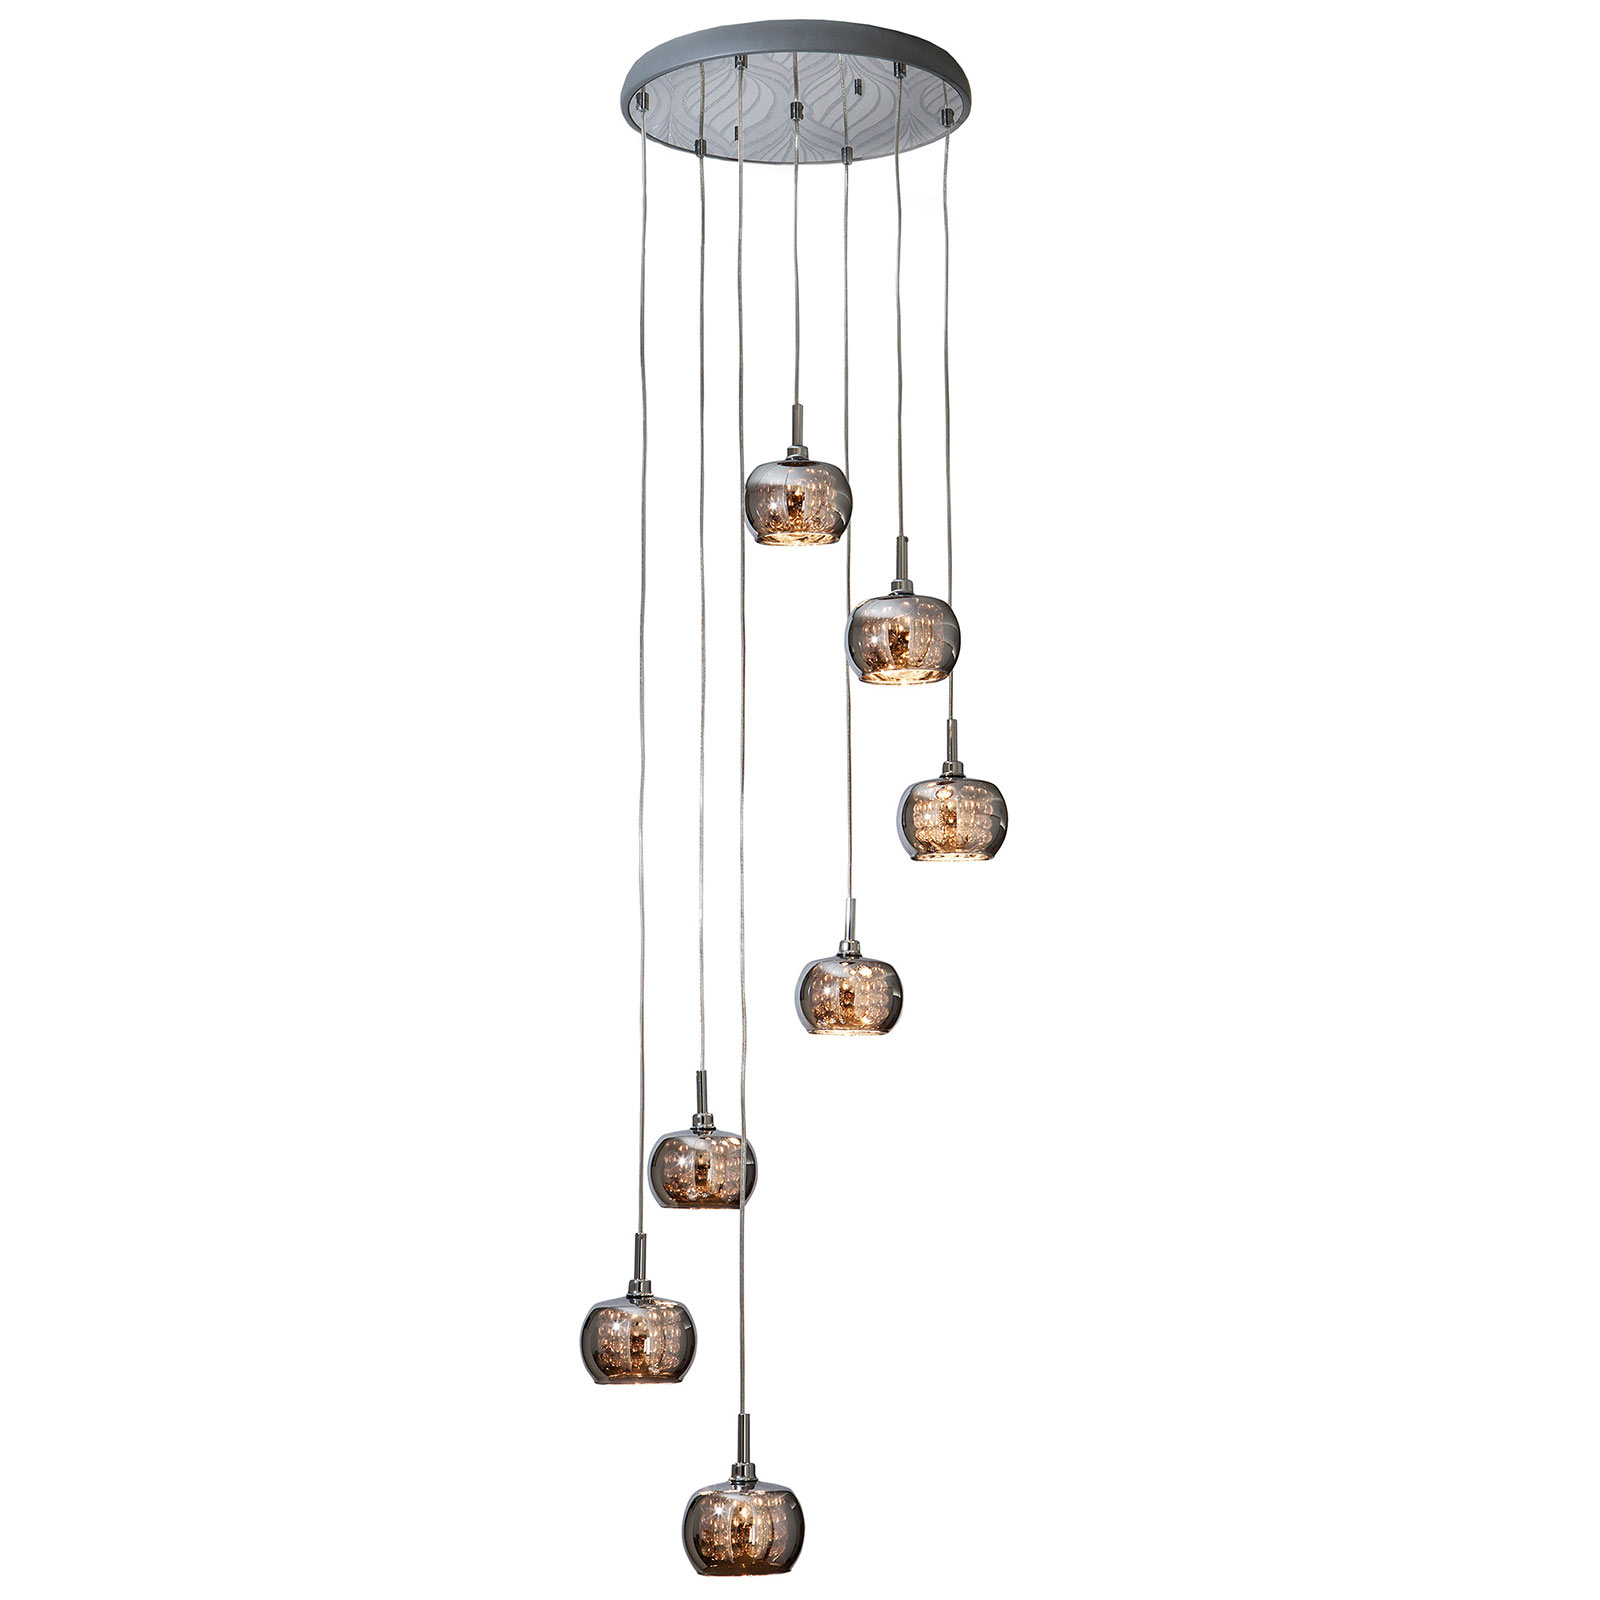 Arian LED-pendellampa med kristaller, sju lampor